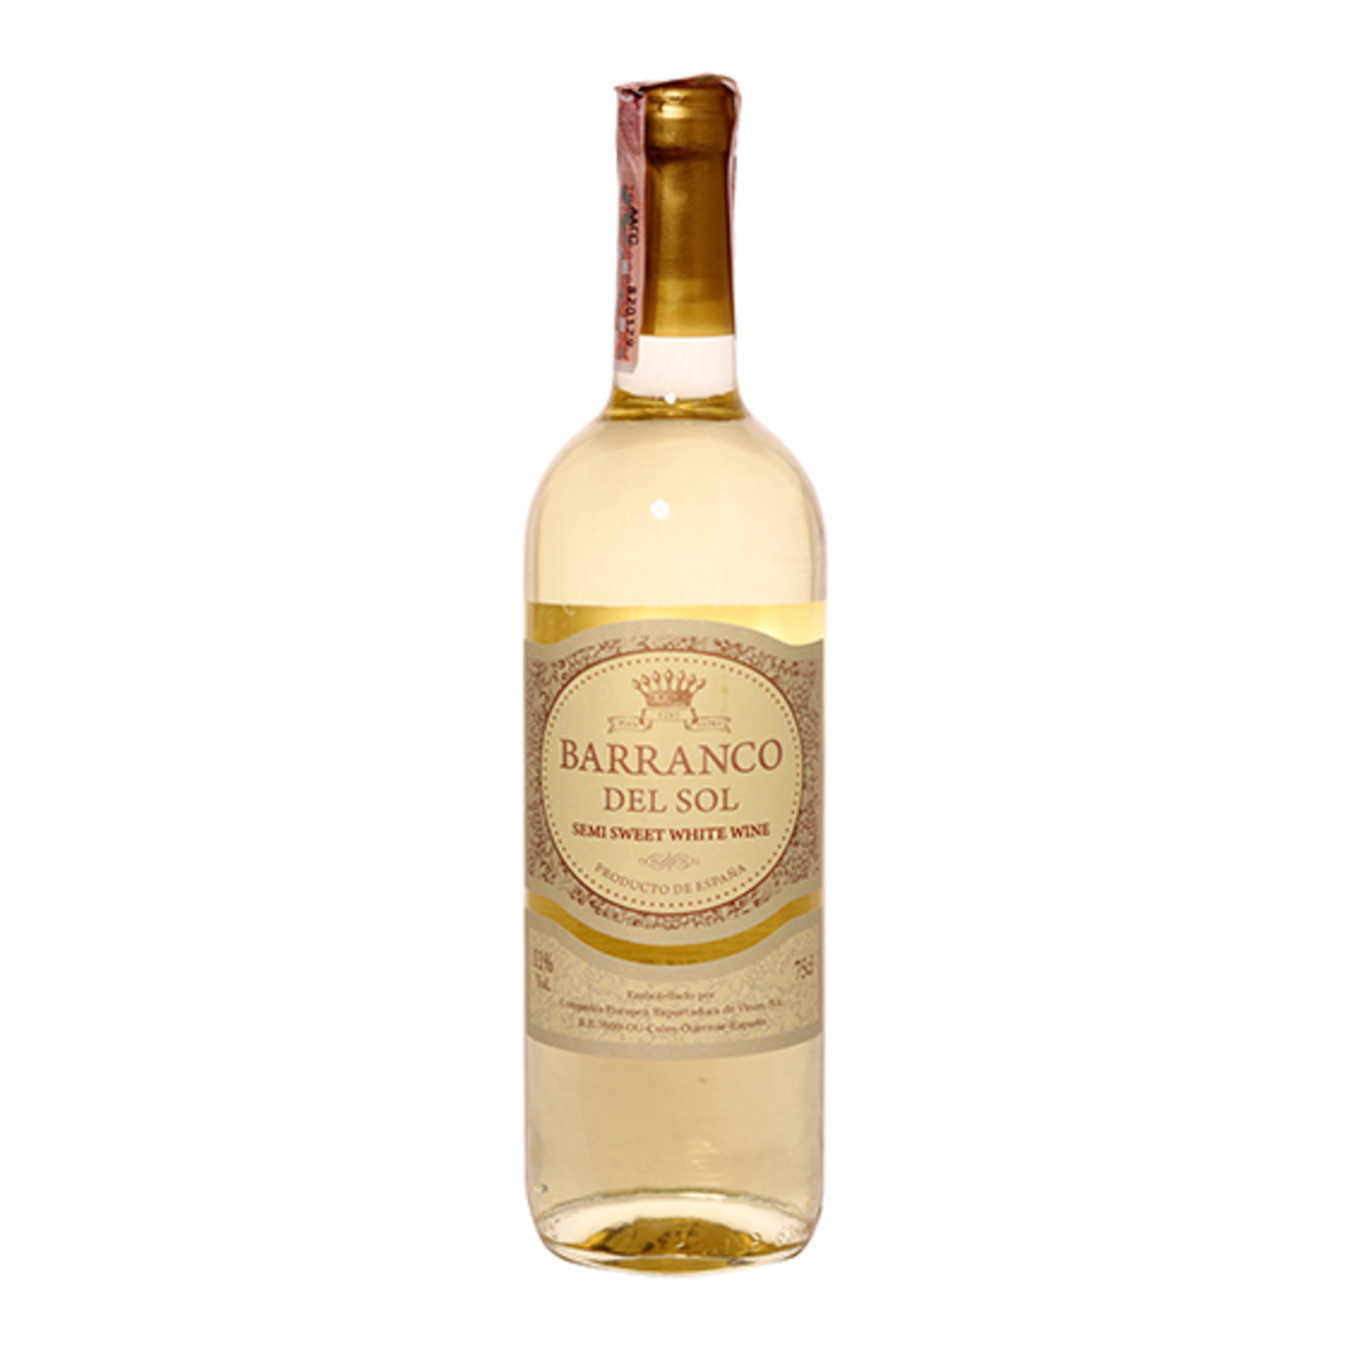 Barranco del Sol white semi-sweet wine 11% 0,75l